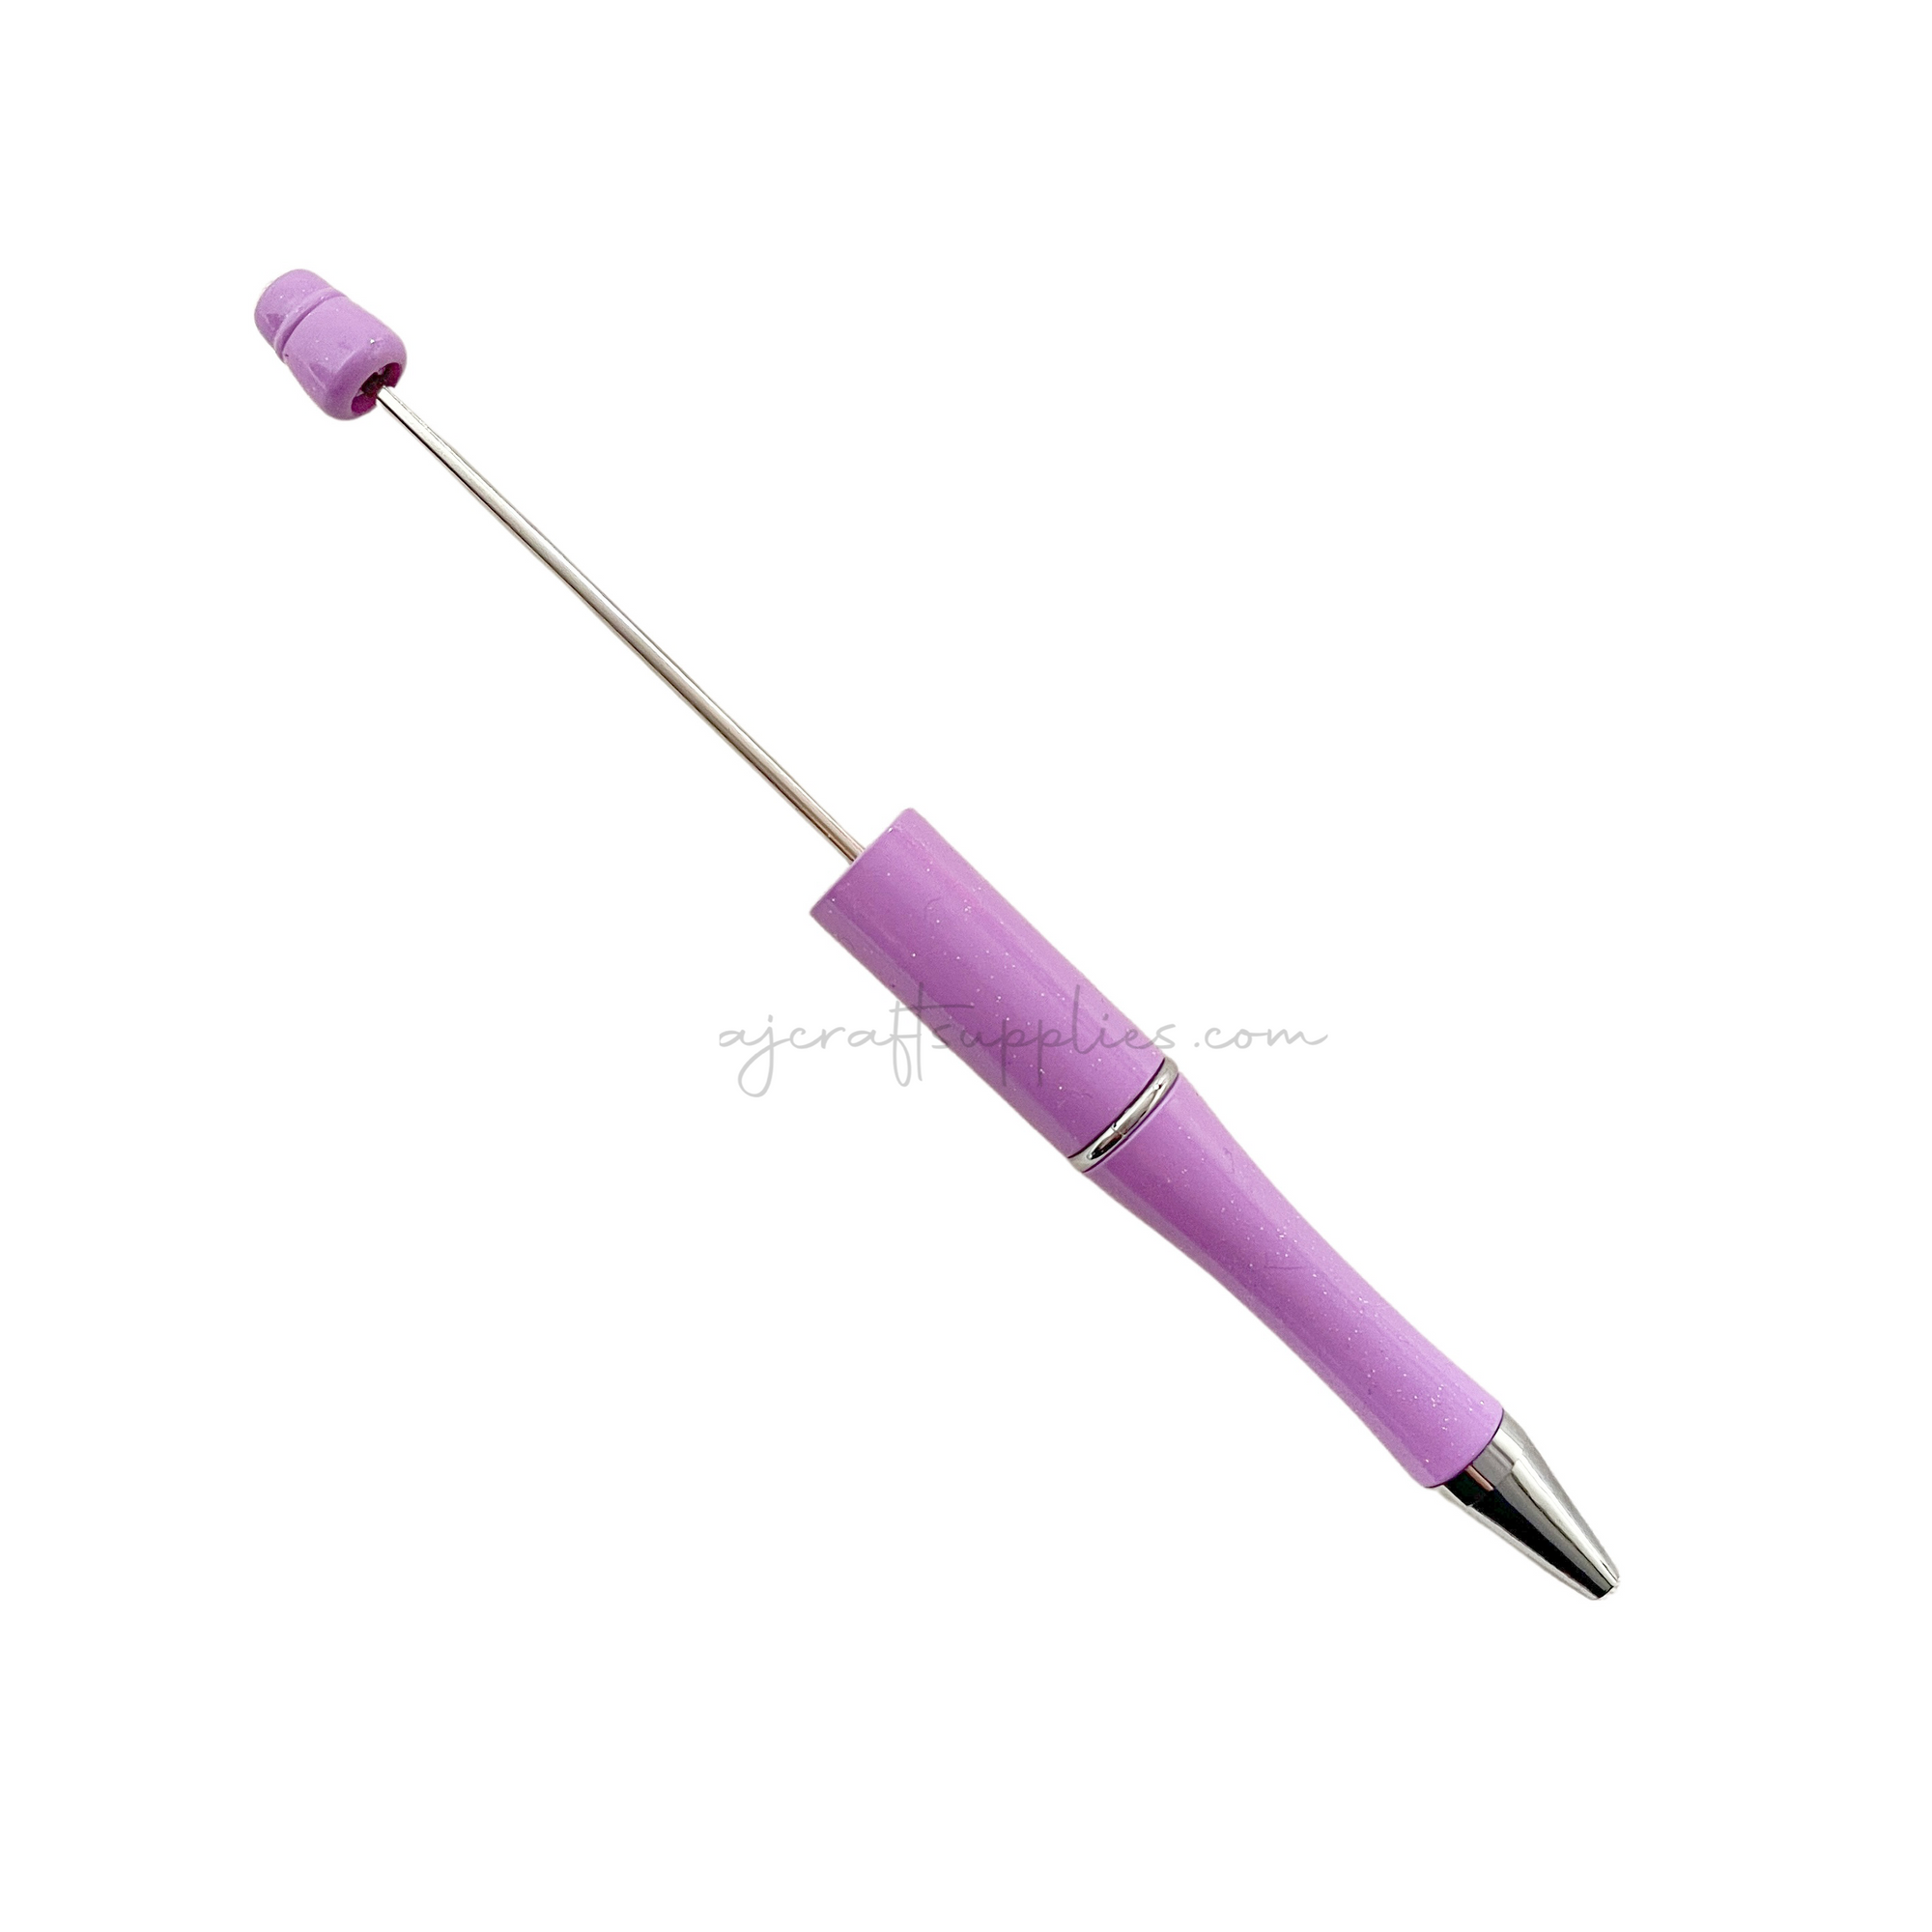 Beadable Pen Blanks - Sparkle Lilac - Each